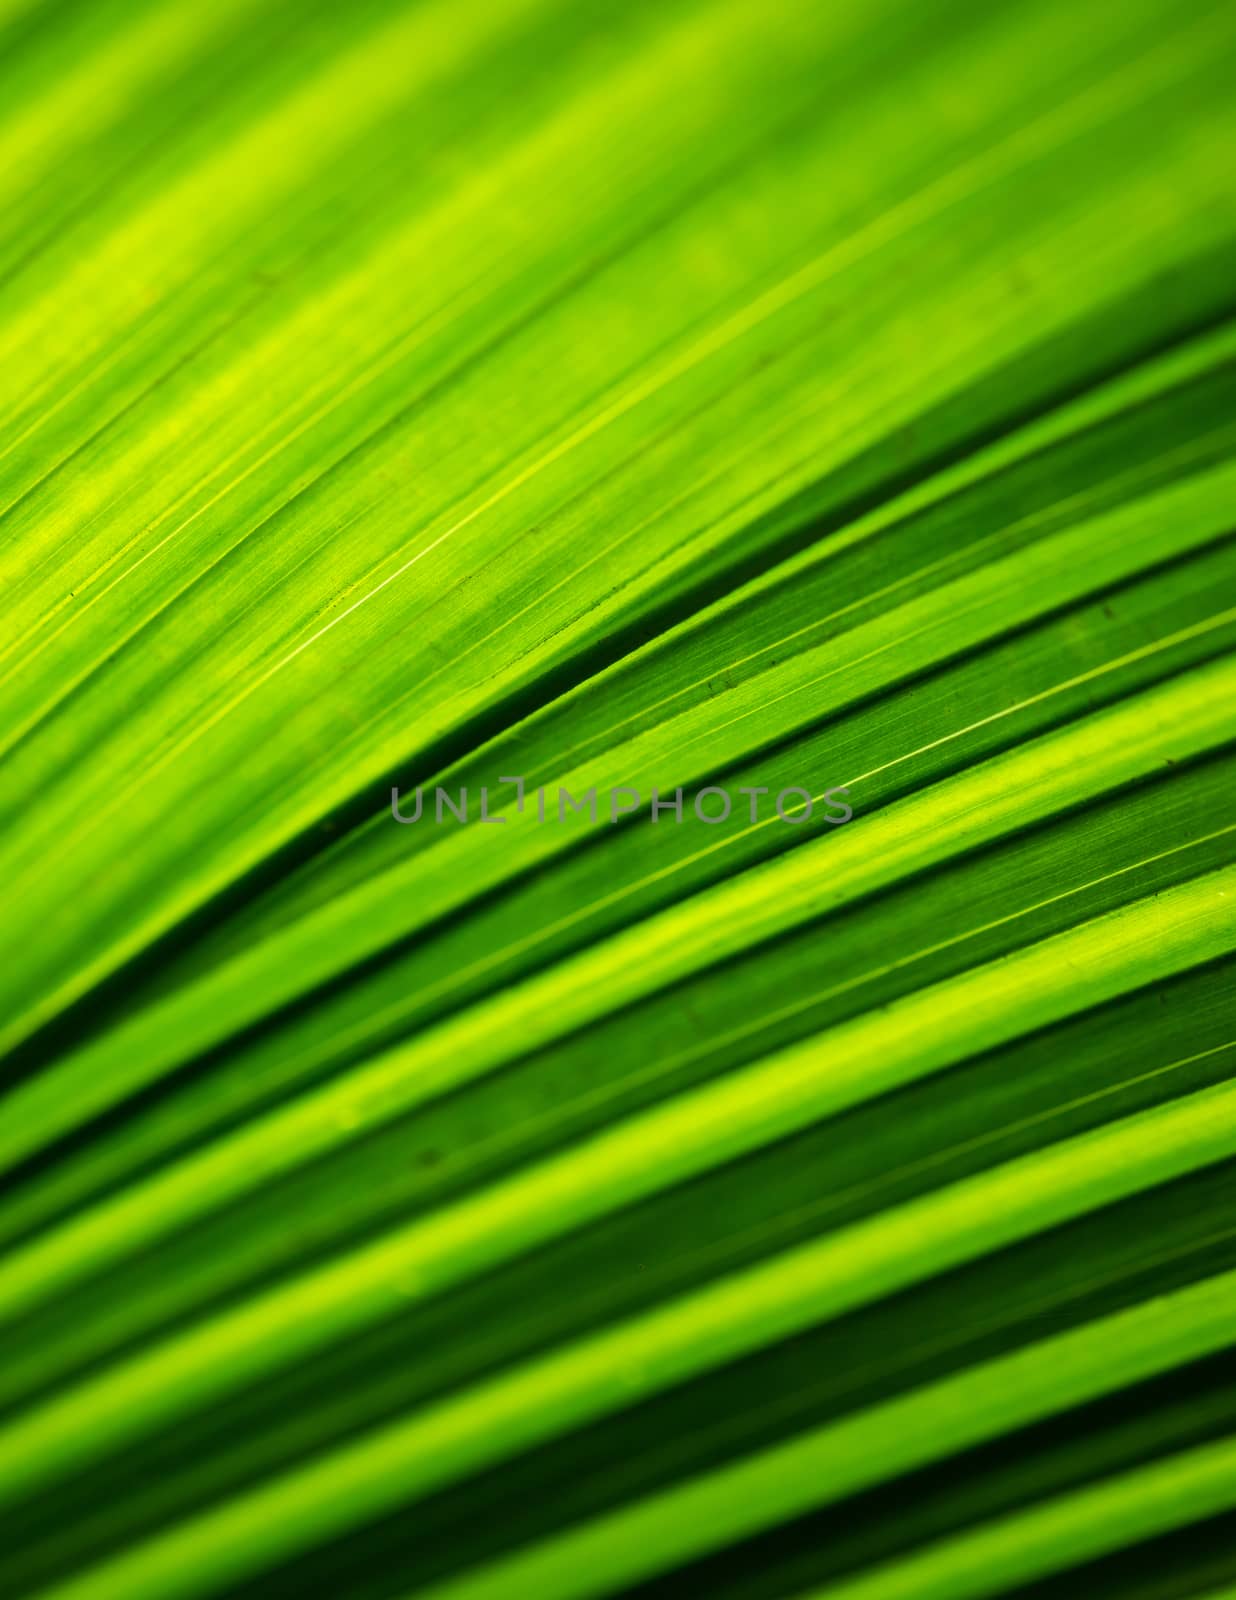 Backlit foliage texture by dutourdumonde